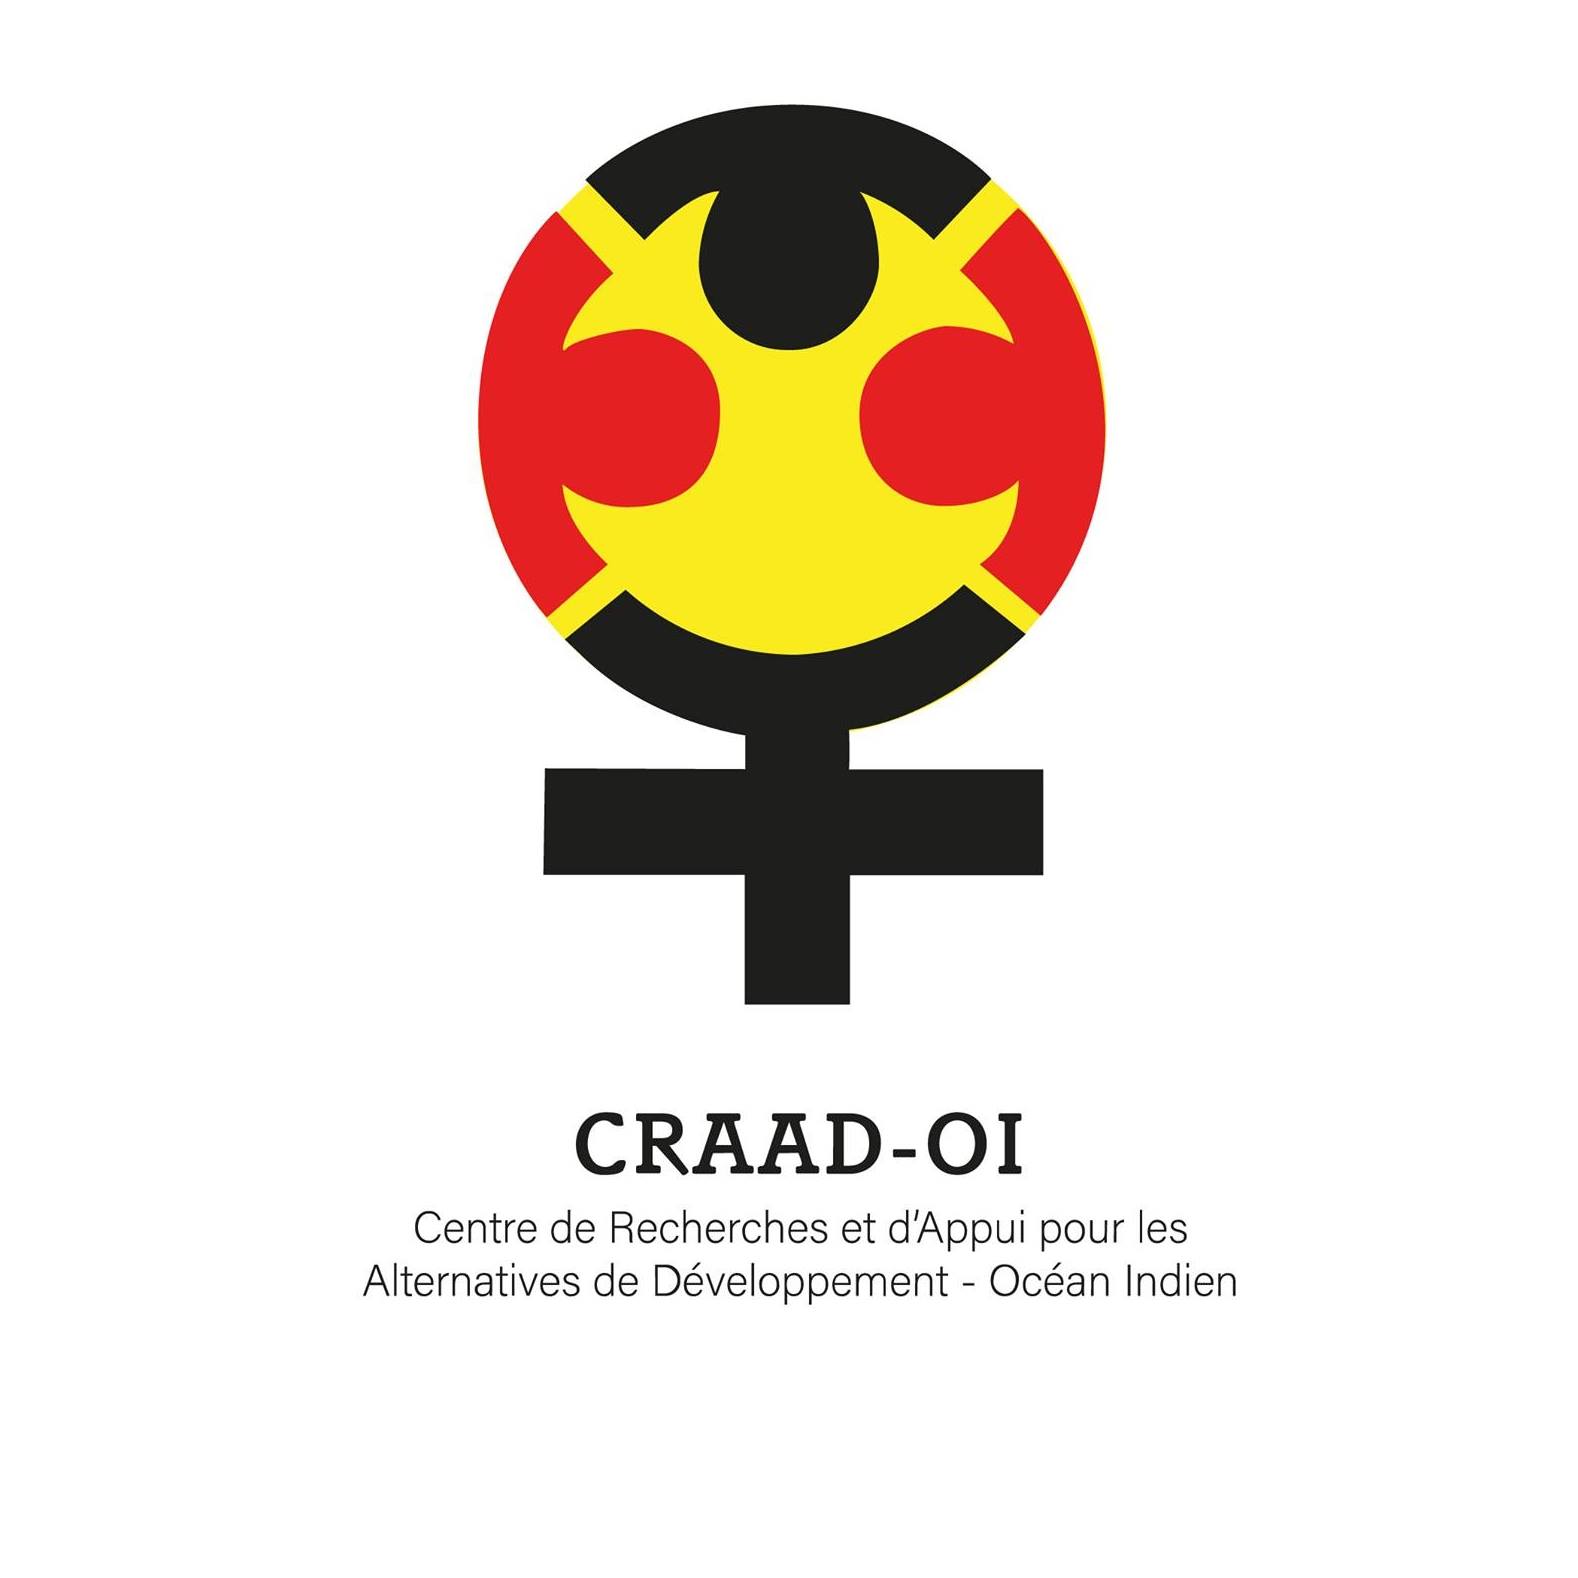 CRAAD-OI